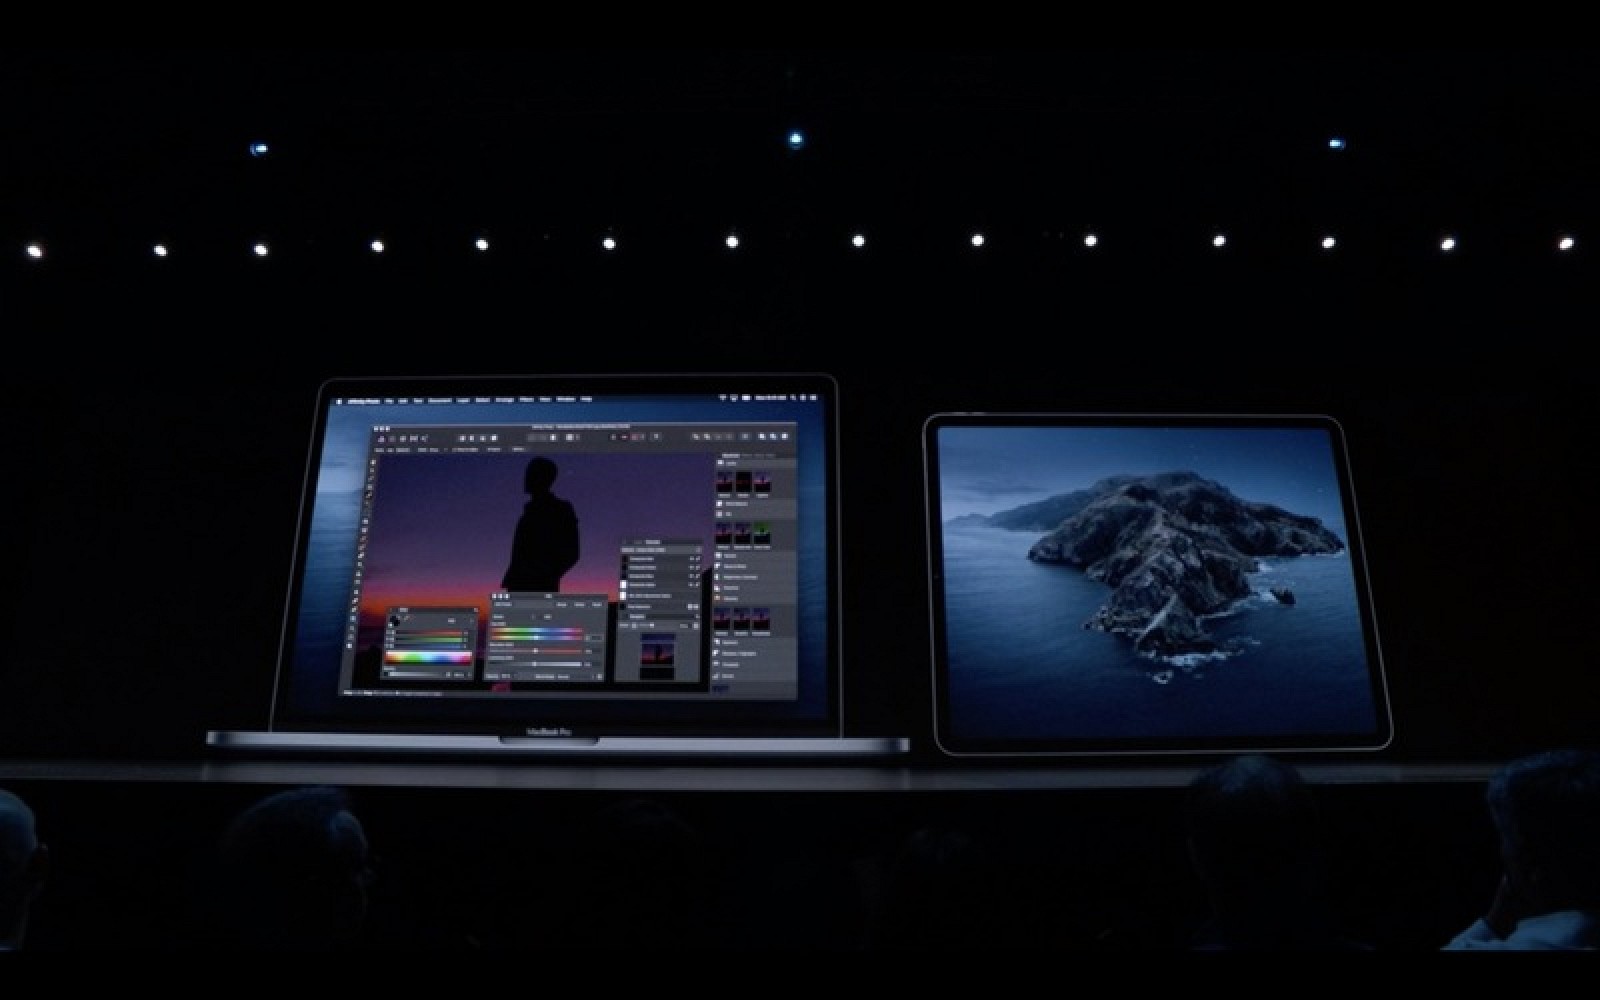 Display ipad on mac